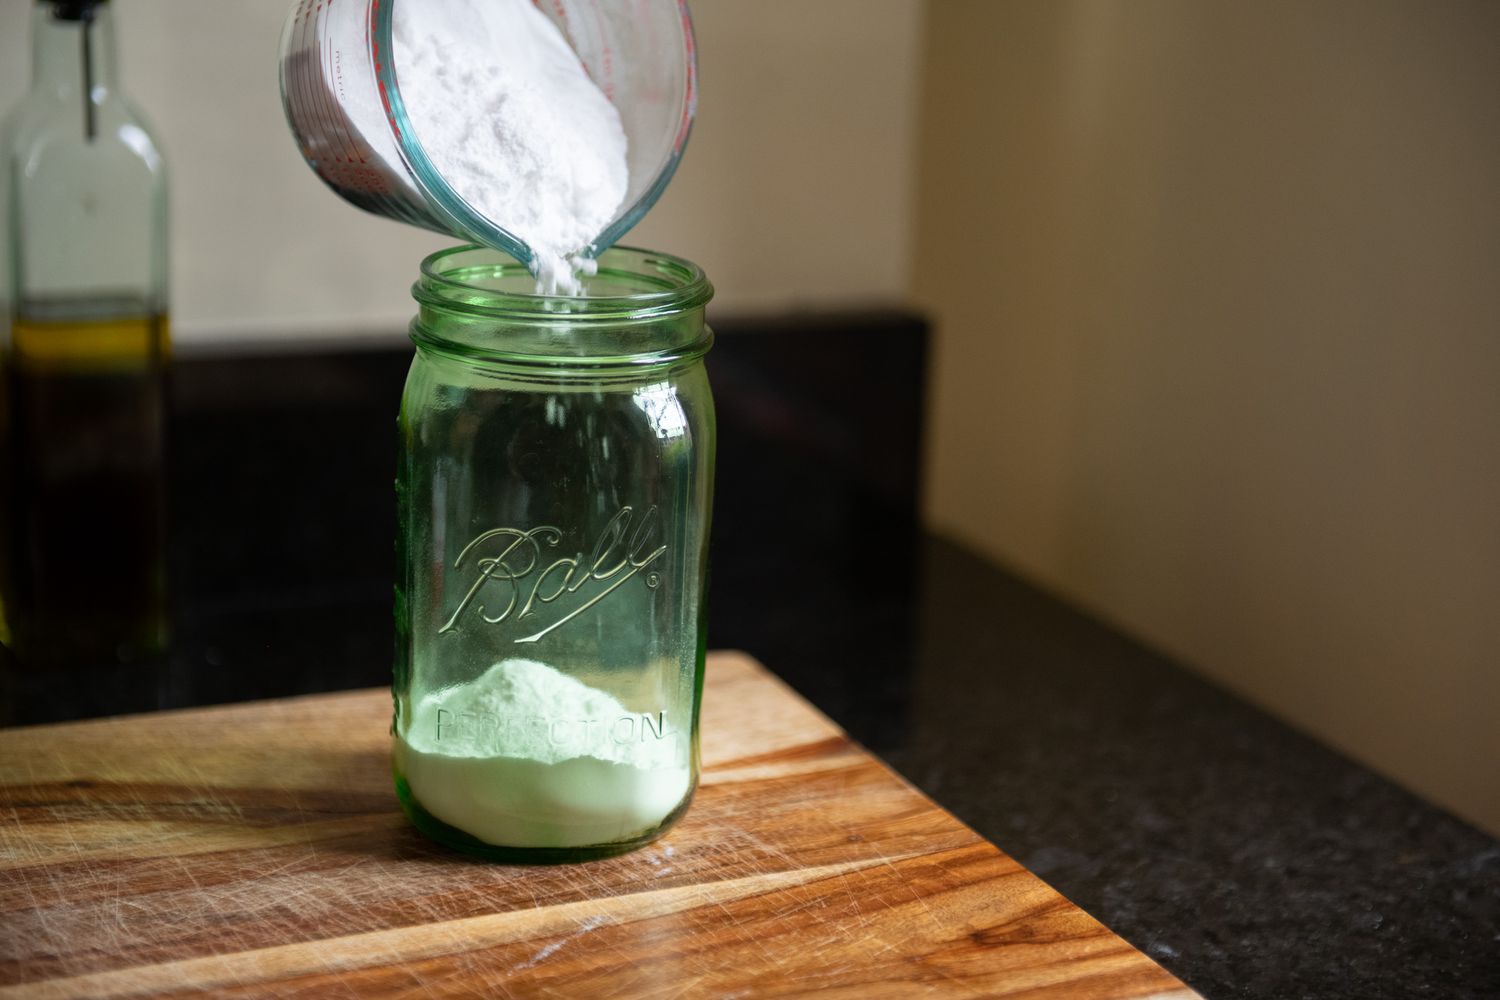 Geschirrspülmittel in ein luftdichtes Glas füllen